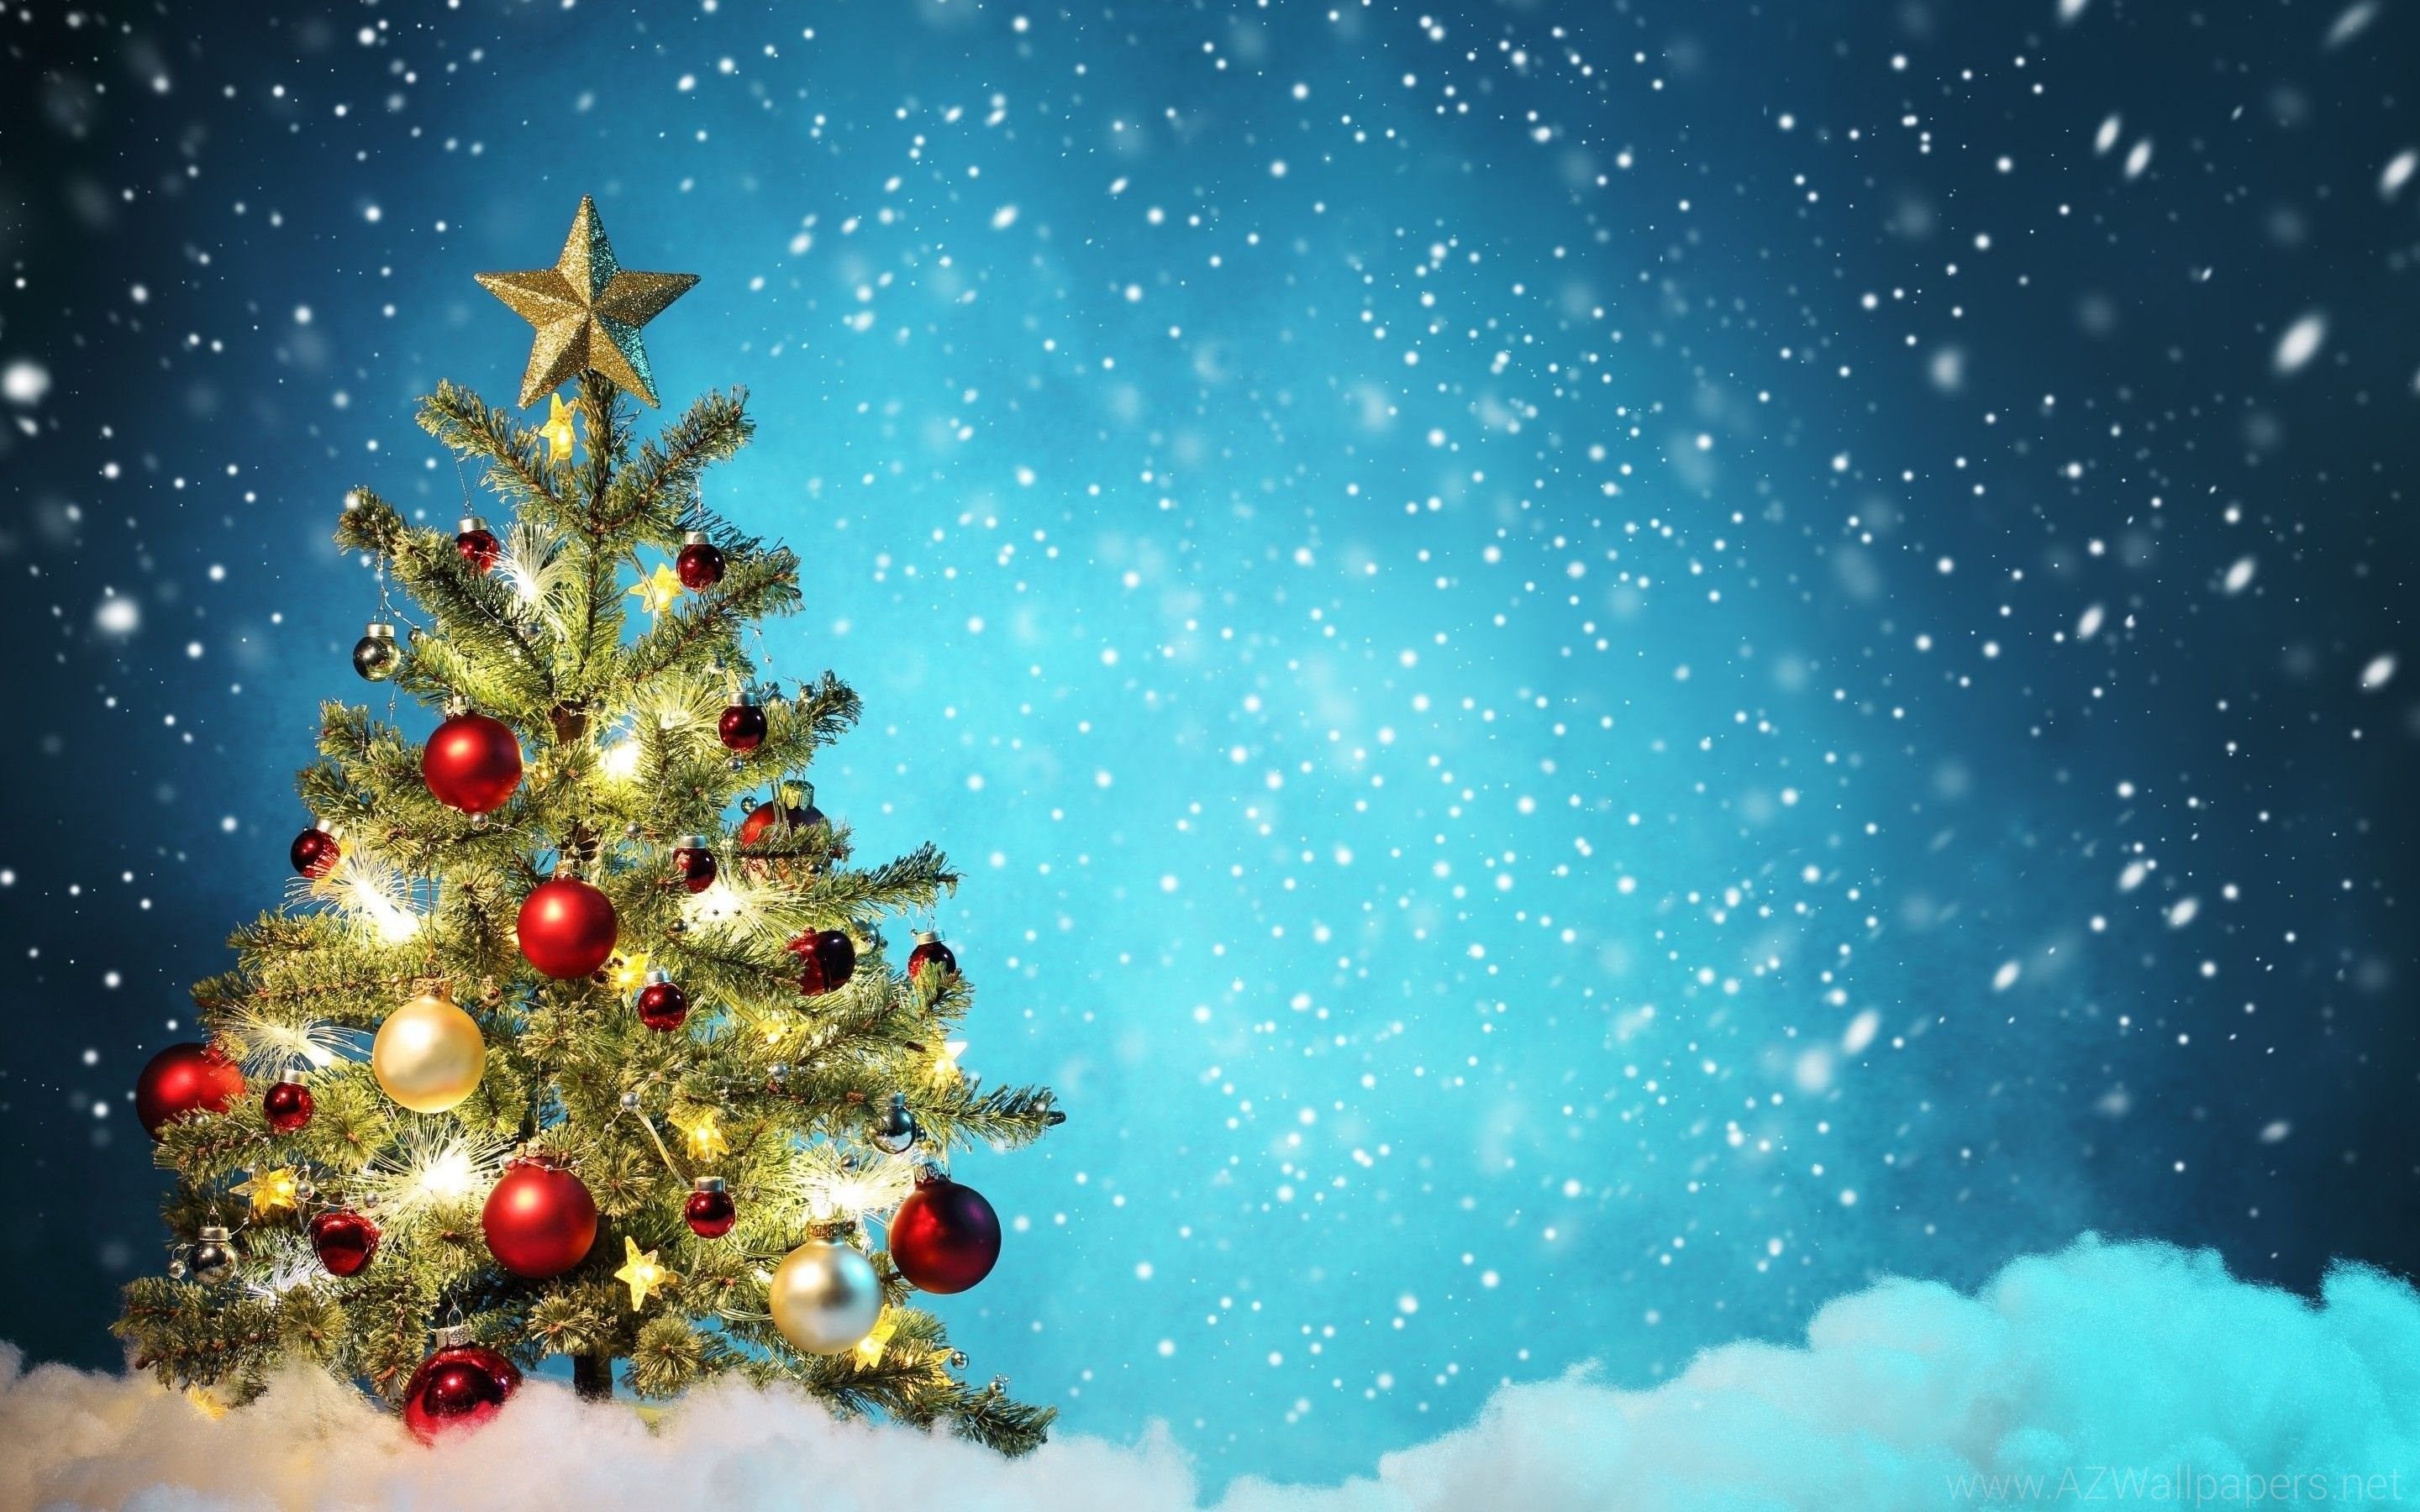 Thánh Ca Noel – với giai điệu đầy cảm xúc và cảm giác lễ hội, sẽ khiến bạn thưởng thức và cảm nhận rõ hơn về mùa lễ Giáng sinh. Hãy cùng xem các hình ảnh liên quan đến Thánh Ca Noel để cảm nhận sâu sắc tình yêu và niềm hy vọng của mùa Giáng sinh.